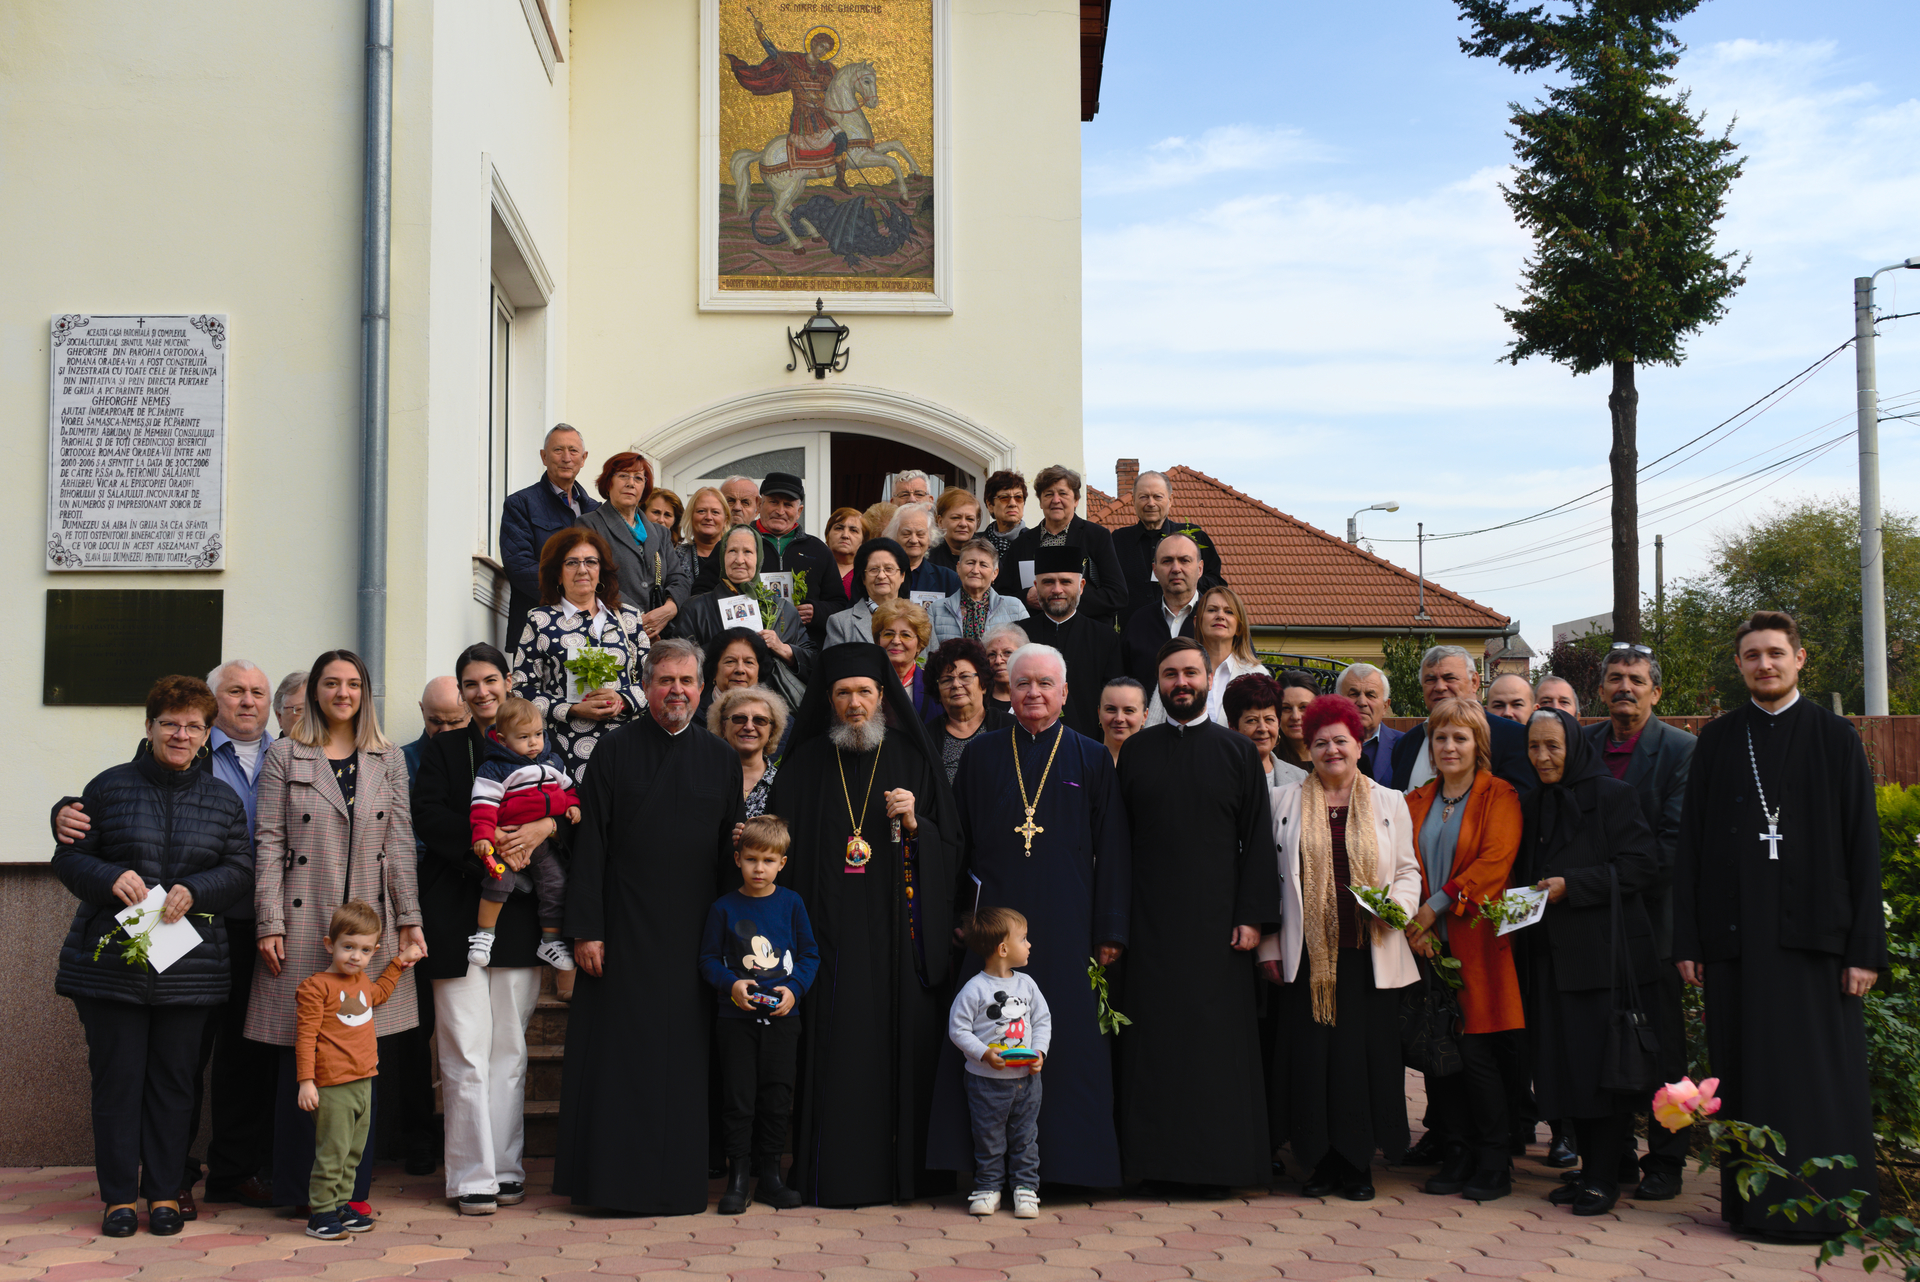 Dare de seamă cu preiljul împlinirii a 12 ani de filantropie la Sucursala „Sfântul Mare Mucenic Gheorghe” de la Parohia Oradea-Vii,  2010-2022